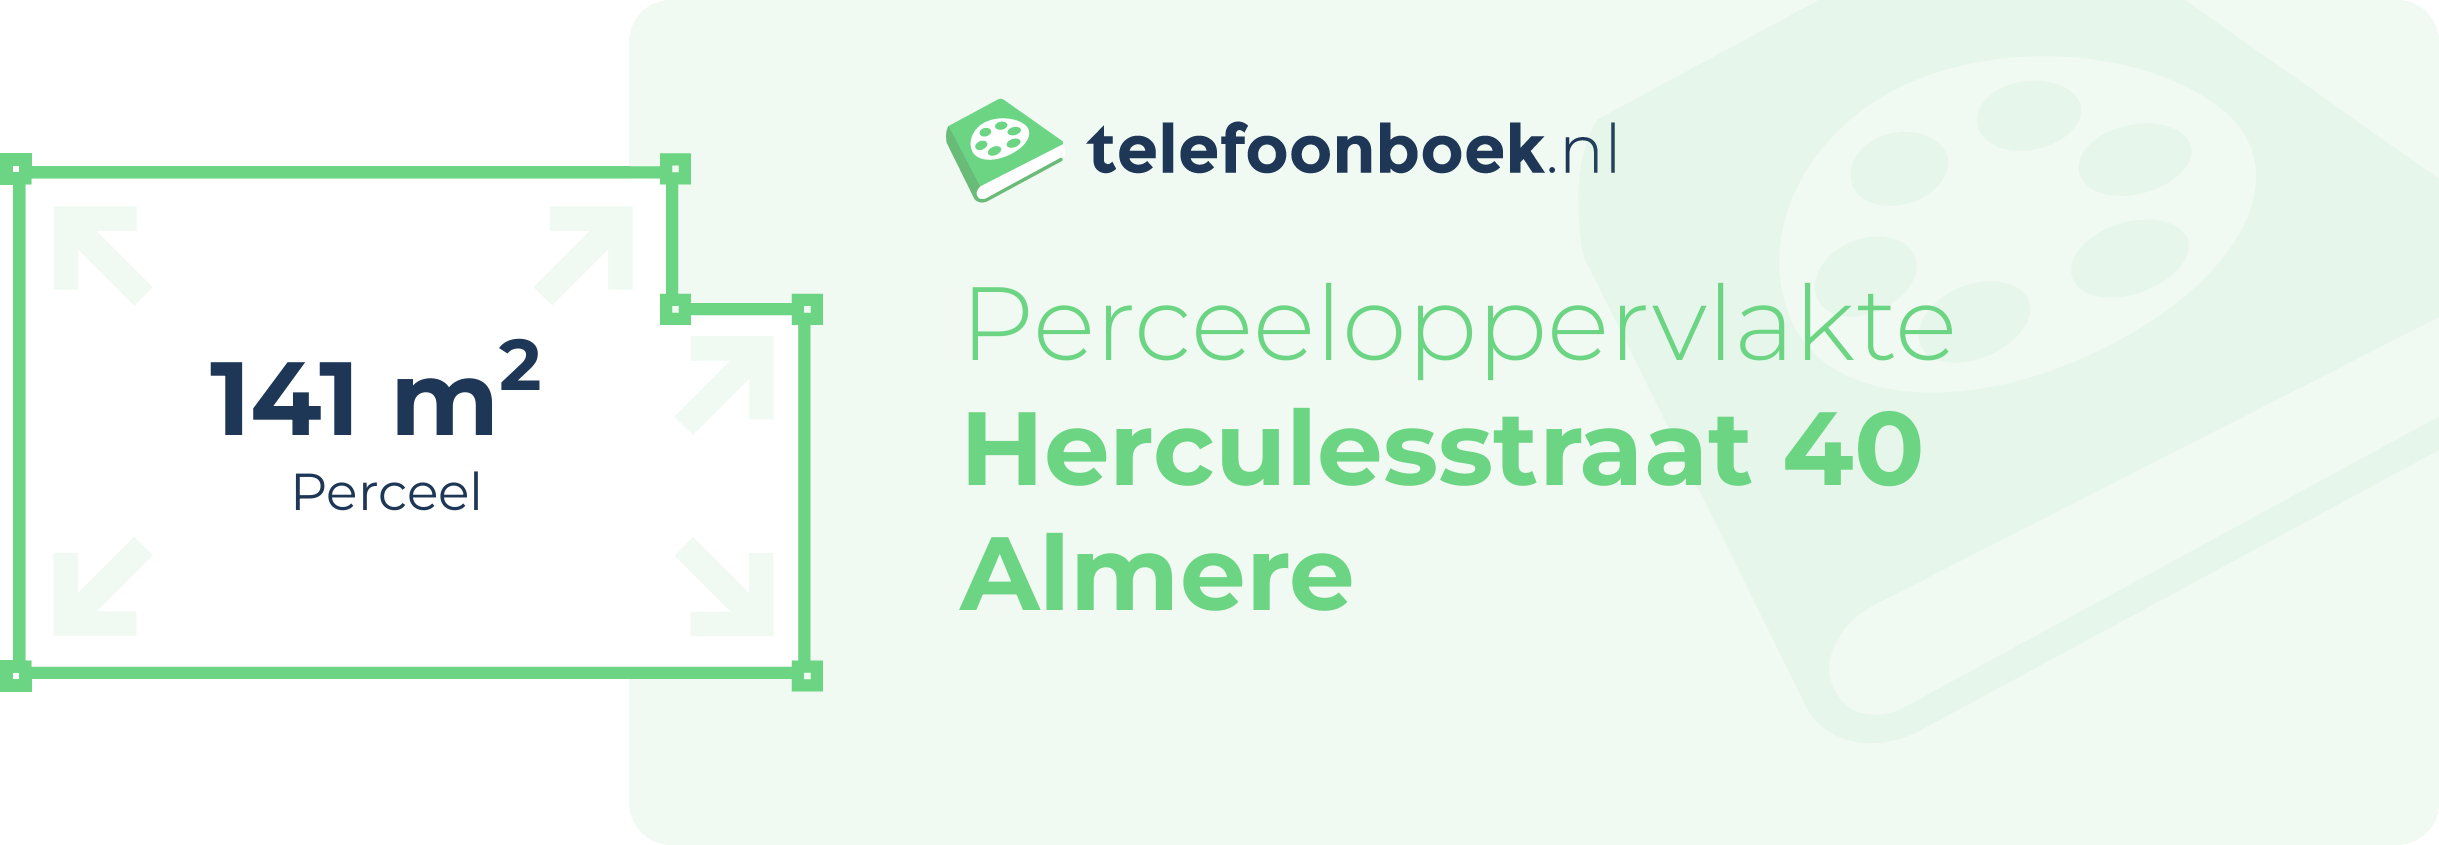 Perceeloppervlakte Herculesstraat 40 Almere